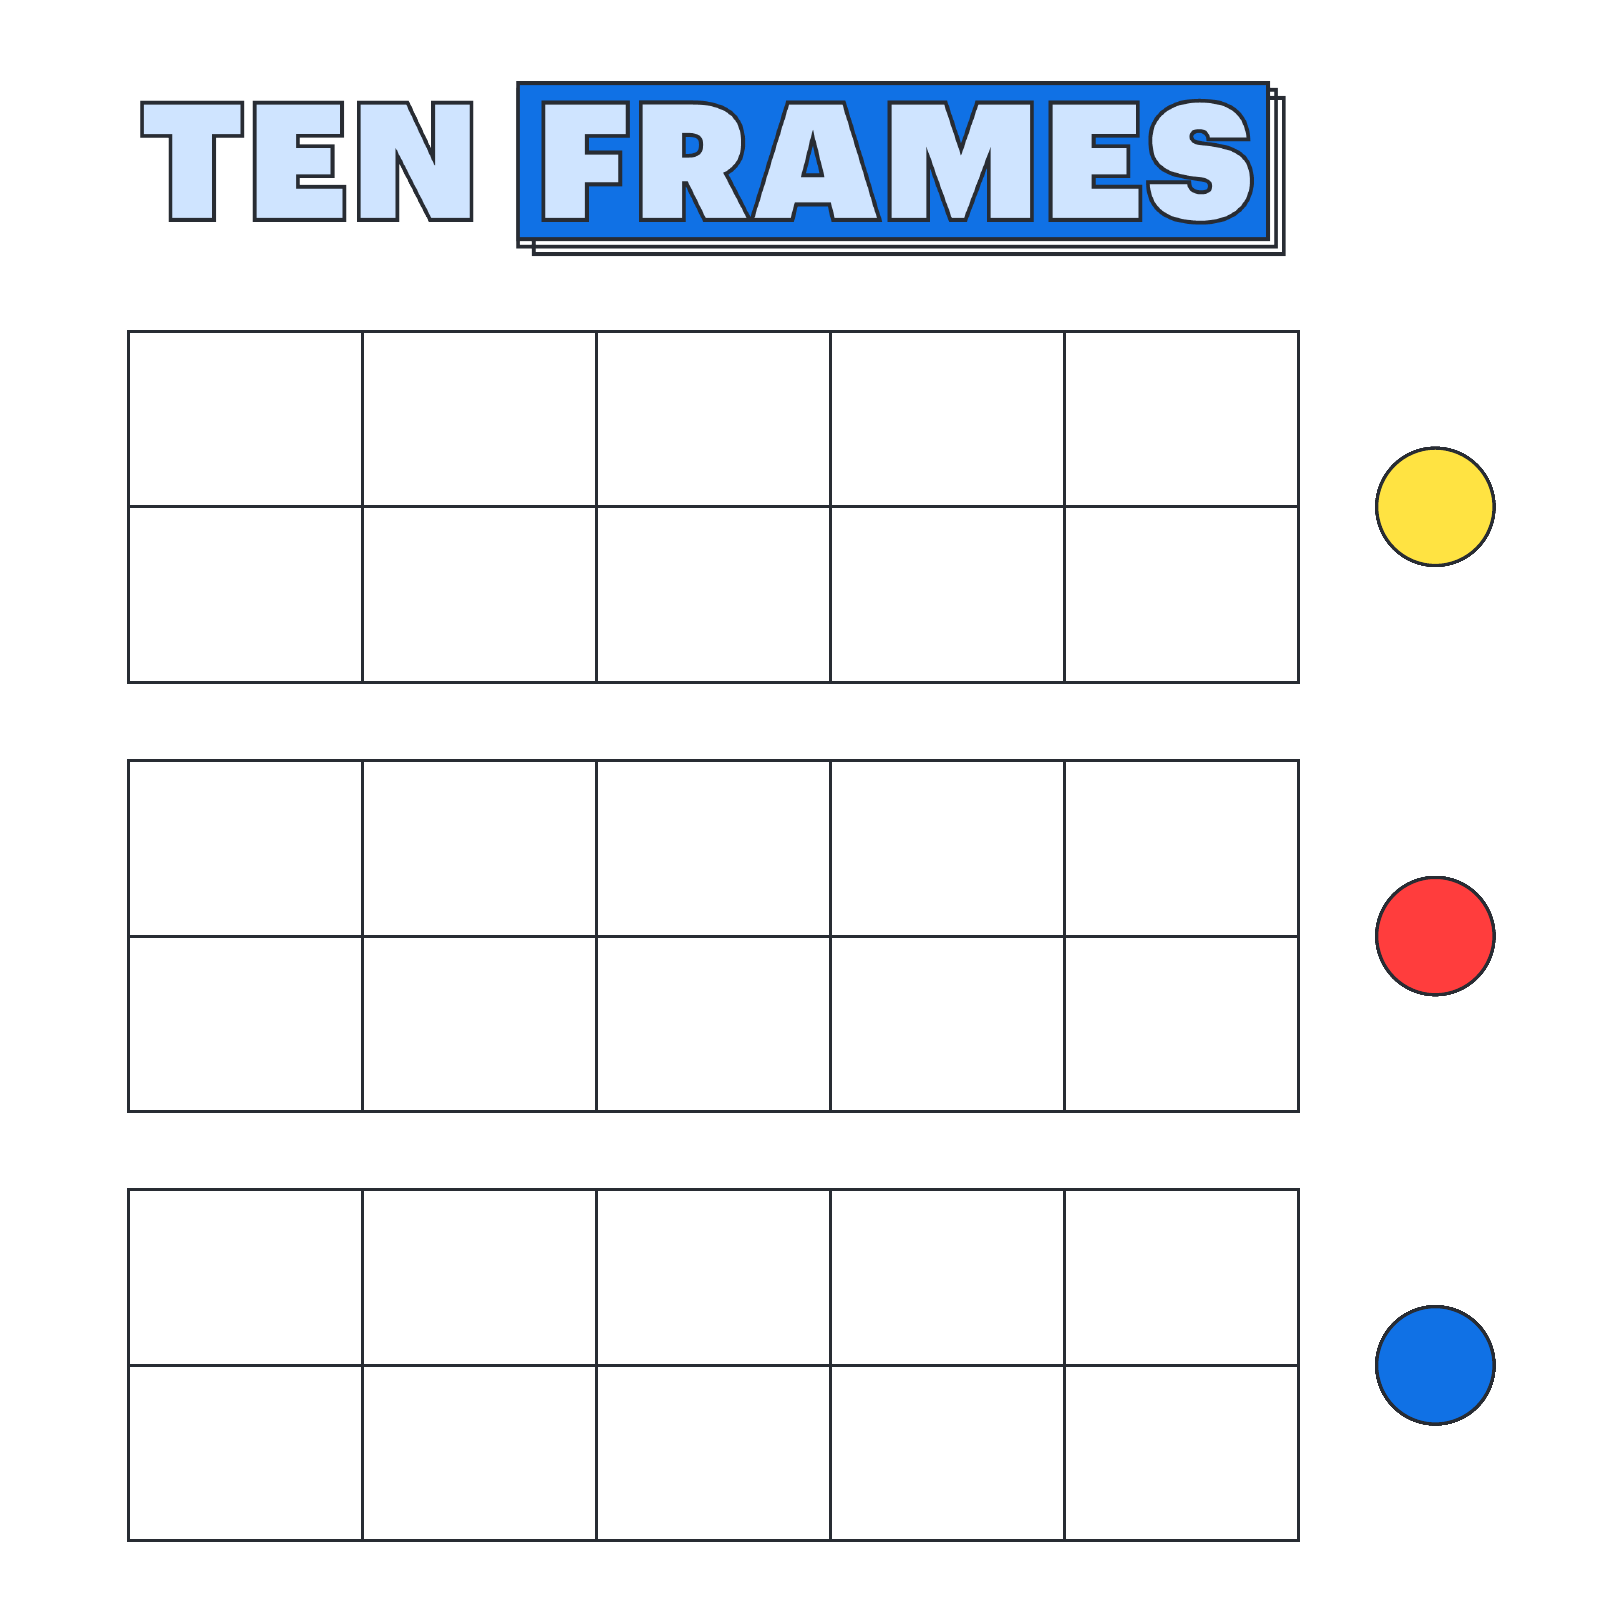 Ten frames example